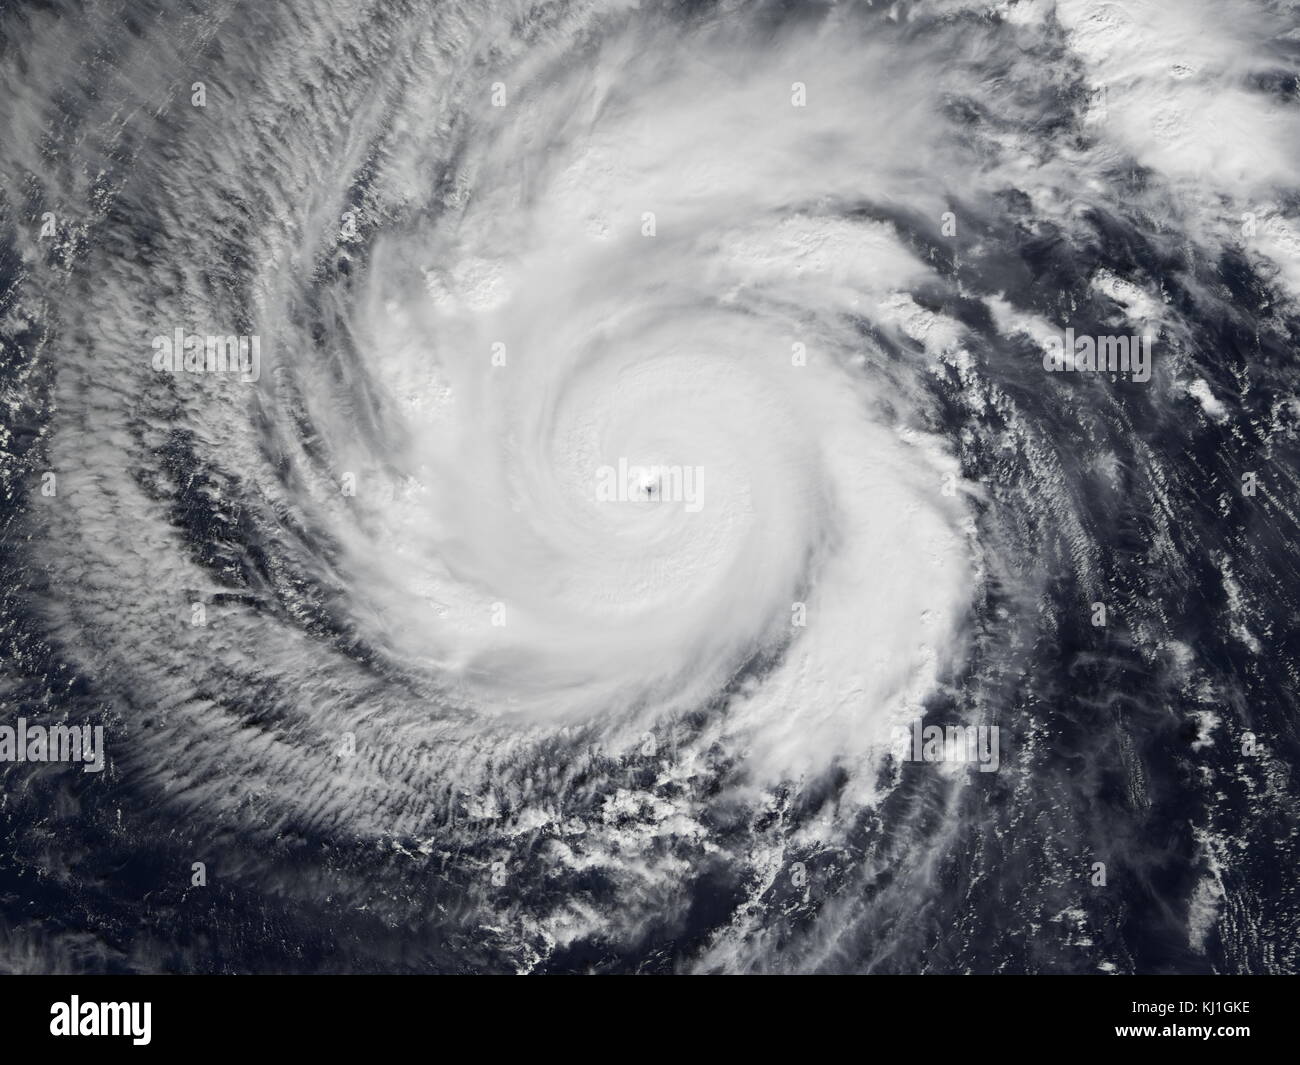 El tifón Faxai era una categoría 5, super tifón que duró entre el 13 de diciembre - 25 el 2001. Su intensidad máxima fue de 195 km/h (120 mph) (10 min) de 915 hPa (mbar) sobre las aguas abiertas del Pacífico Occidental. Foto de stock